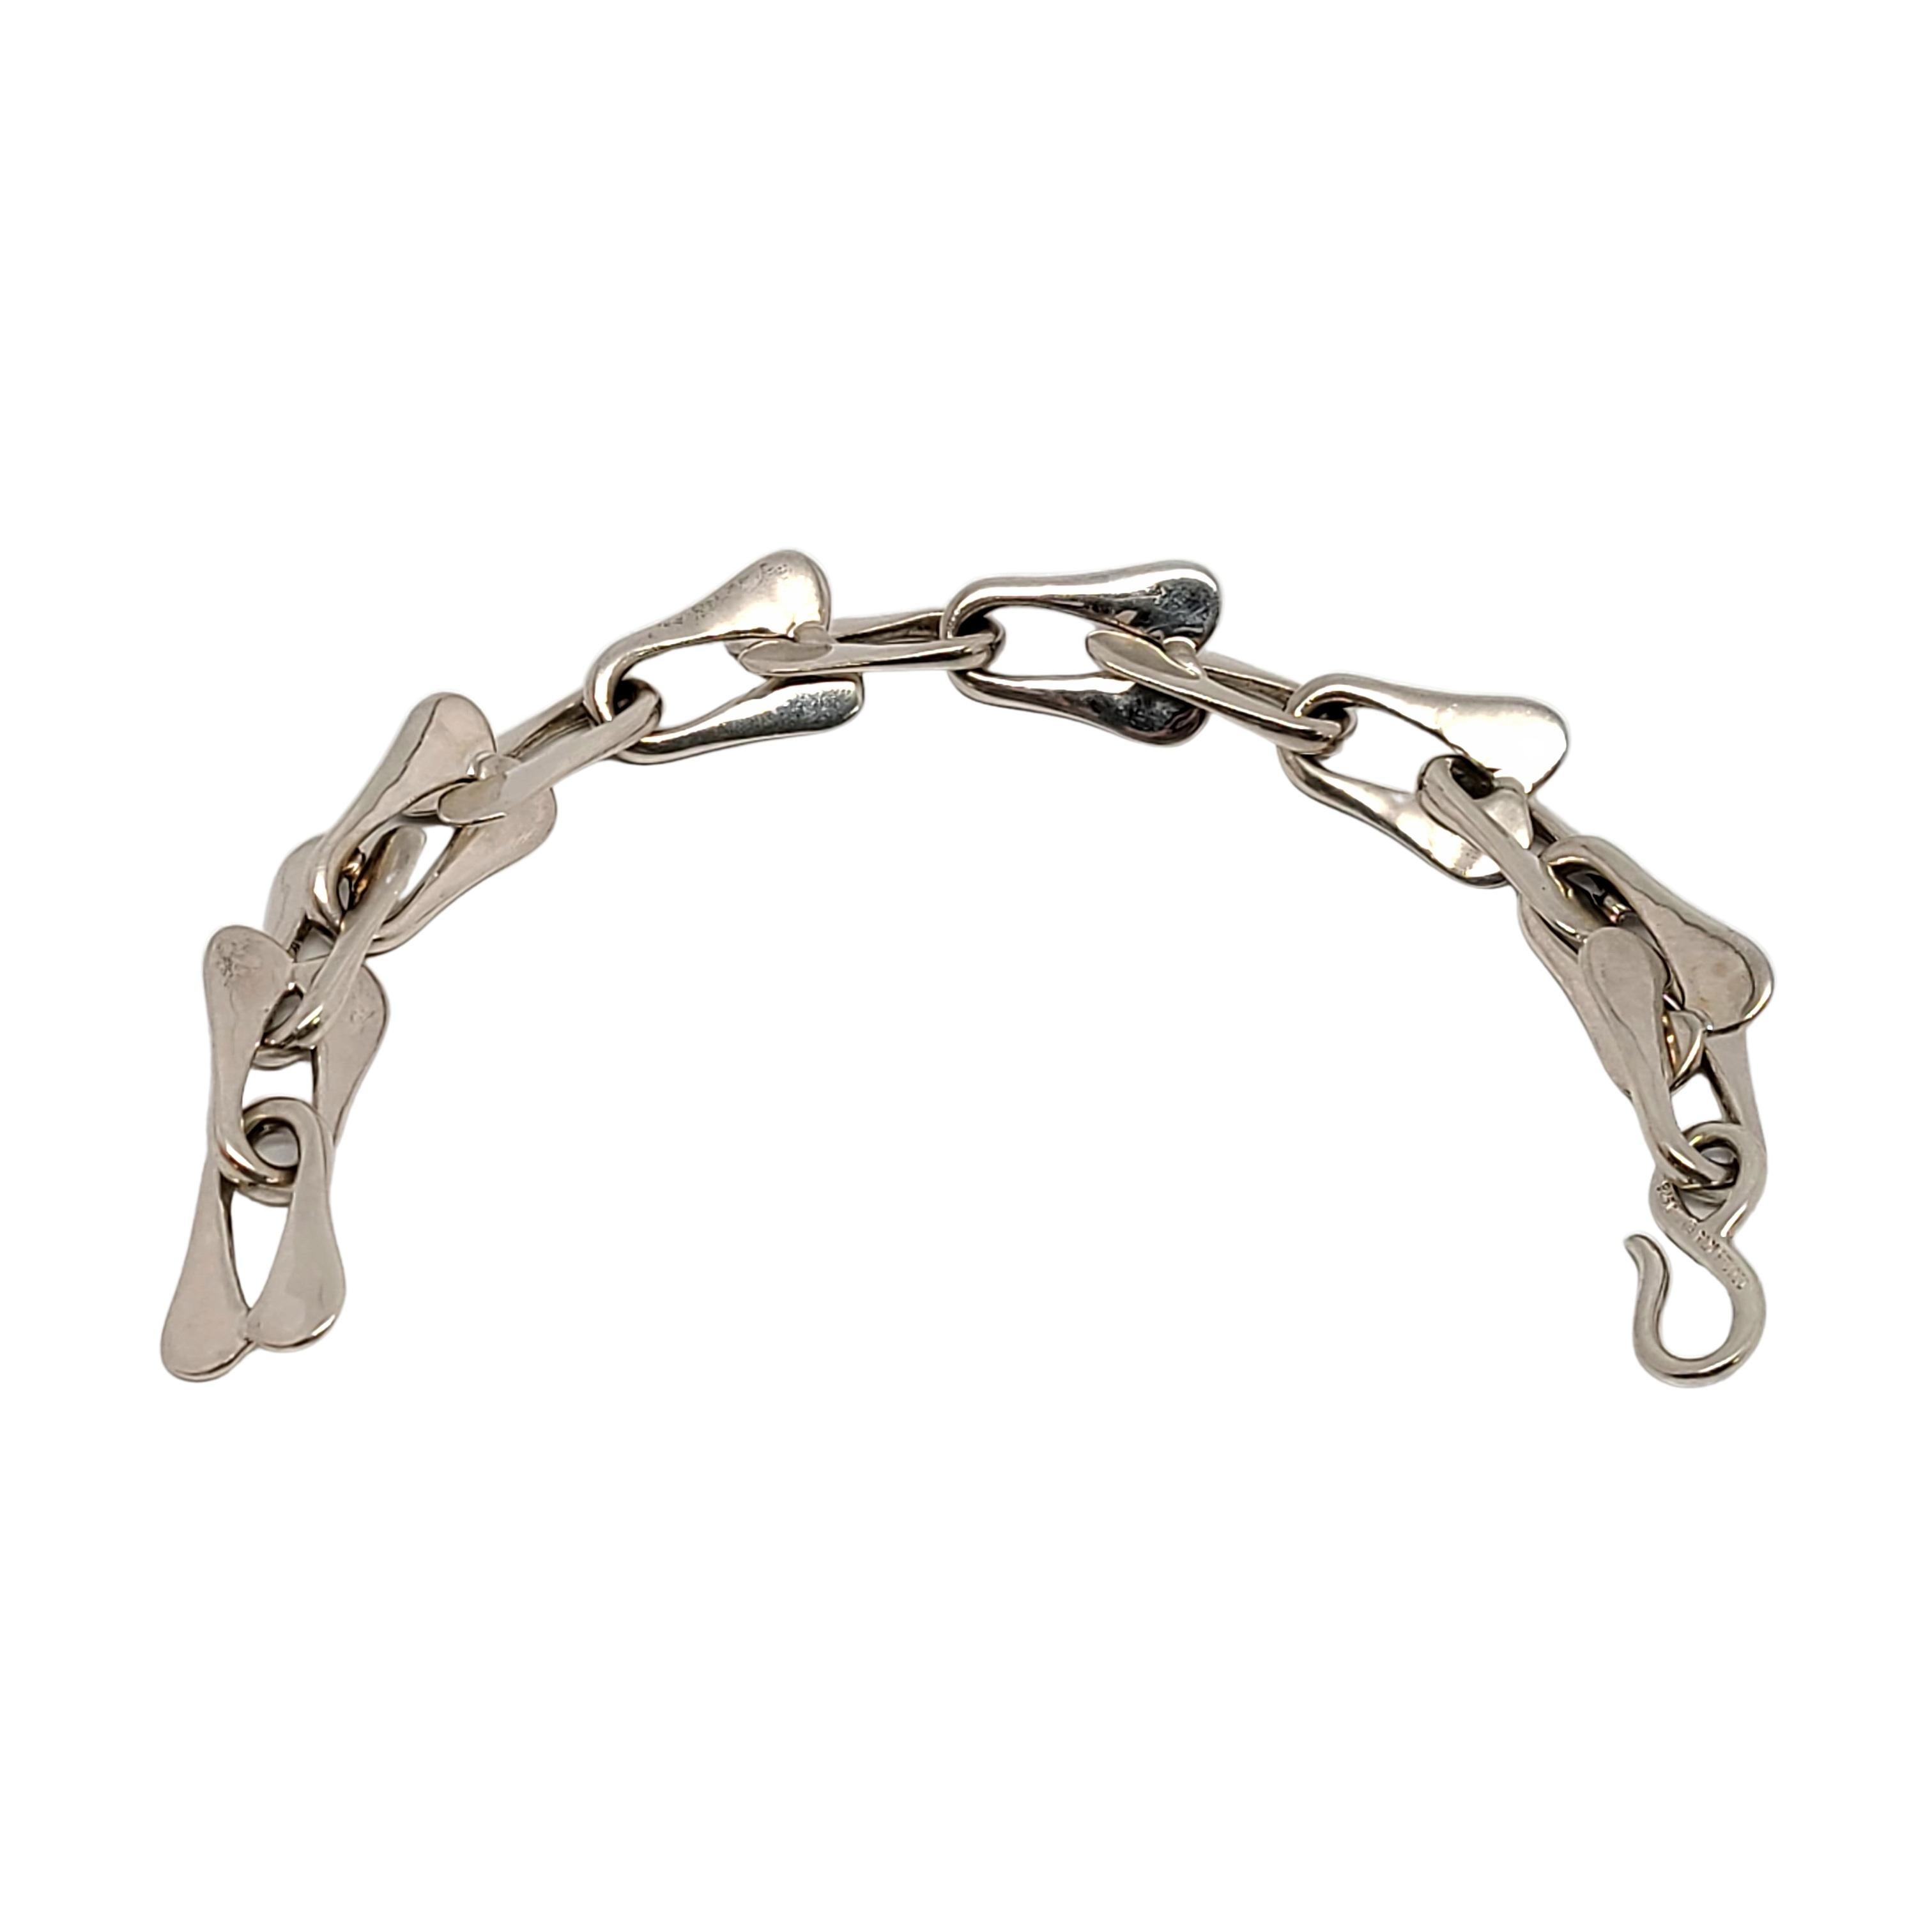 Sterling silver modernist link bracelet by designer Robert Lee Morris.

This modernist designer piece features elongated flat U-shaped links.

Measures approx 9